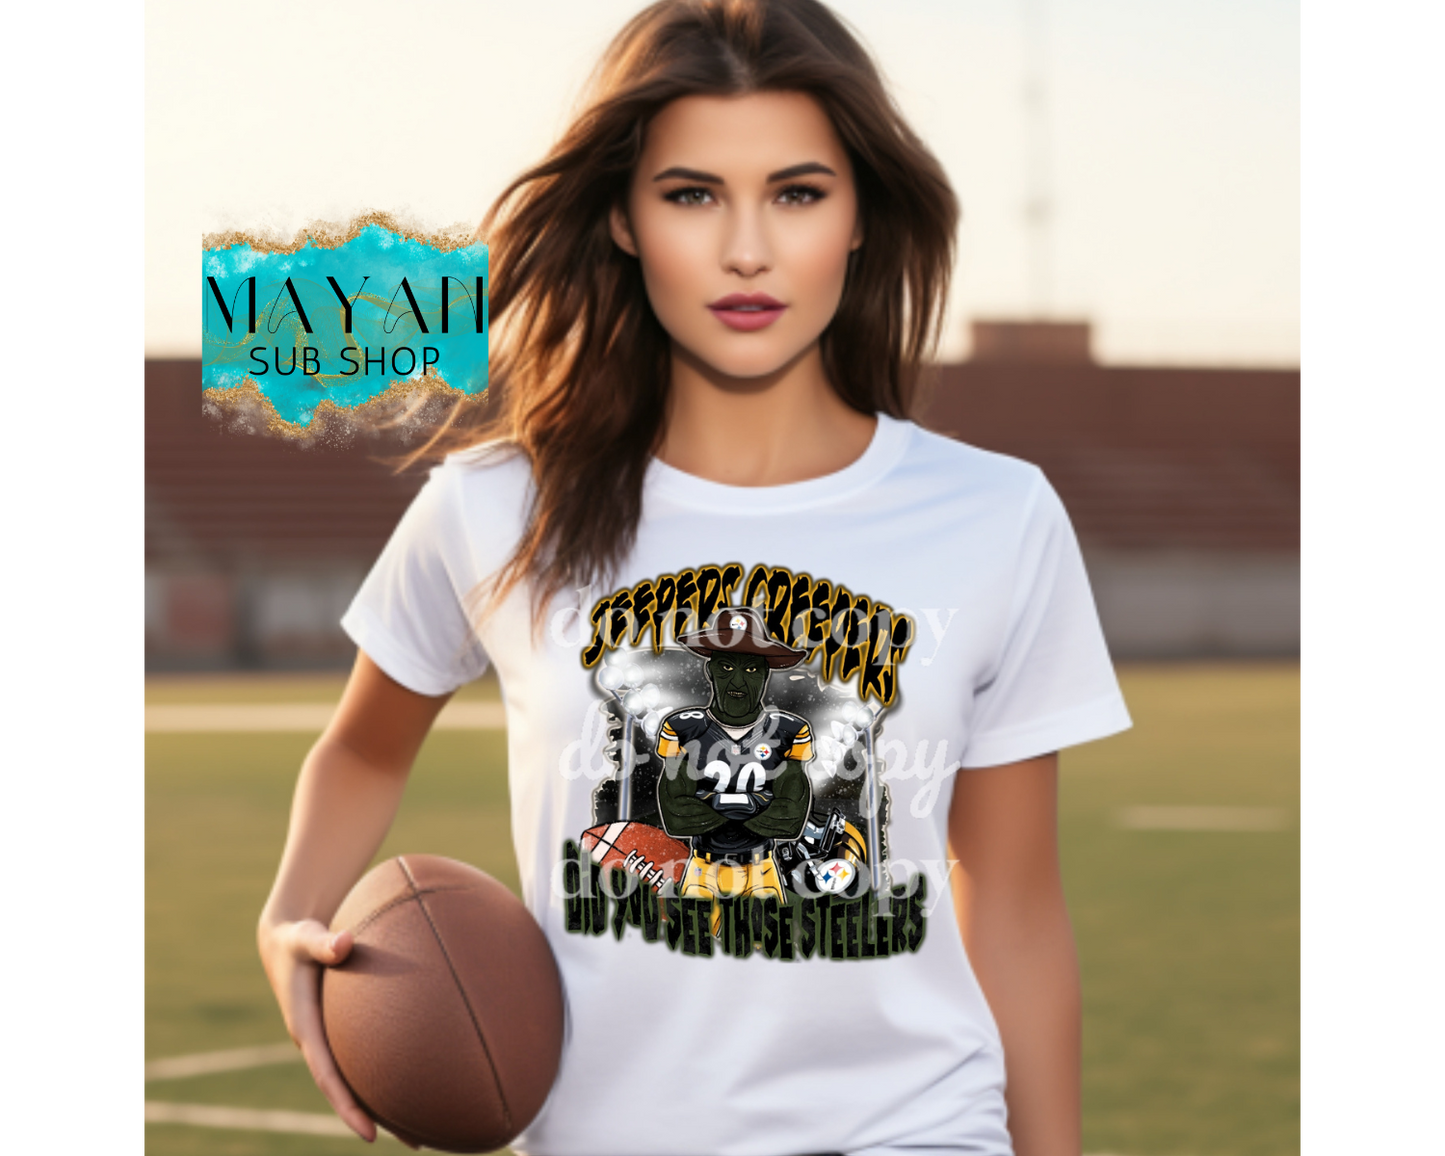 Football jeepers shirt. - Mayan Sub Shop